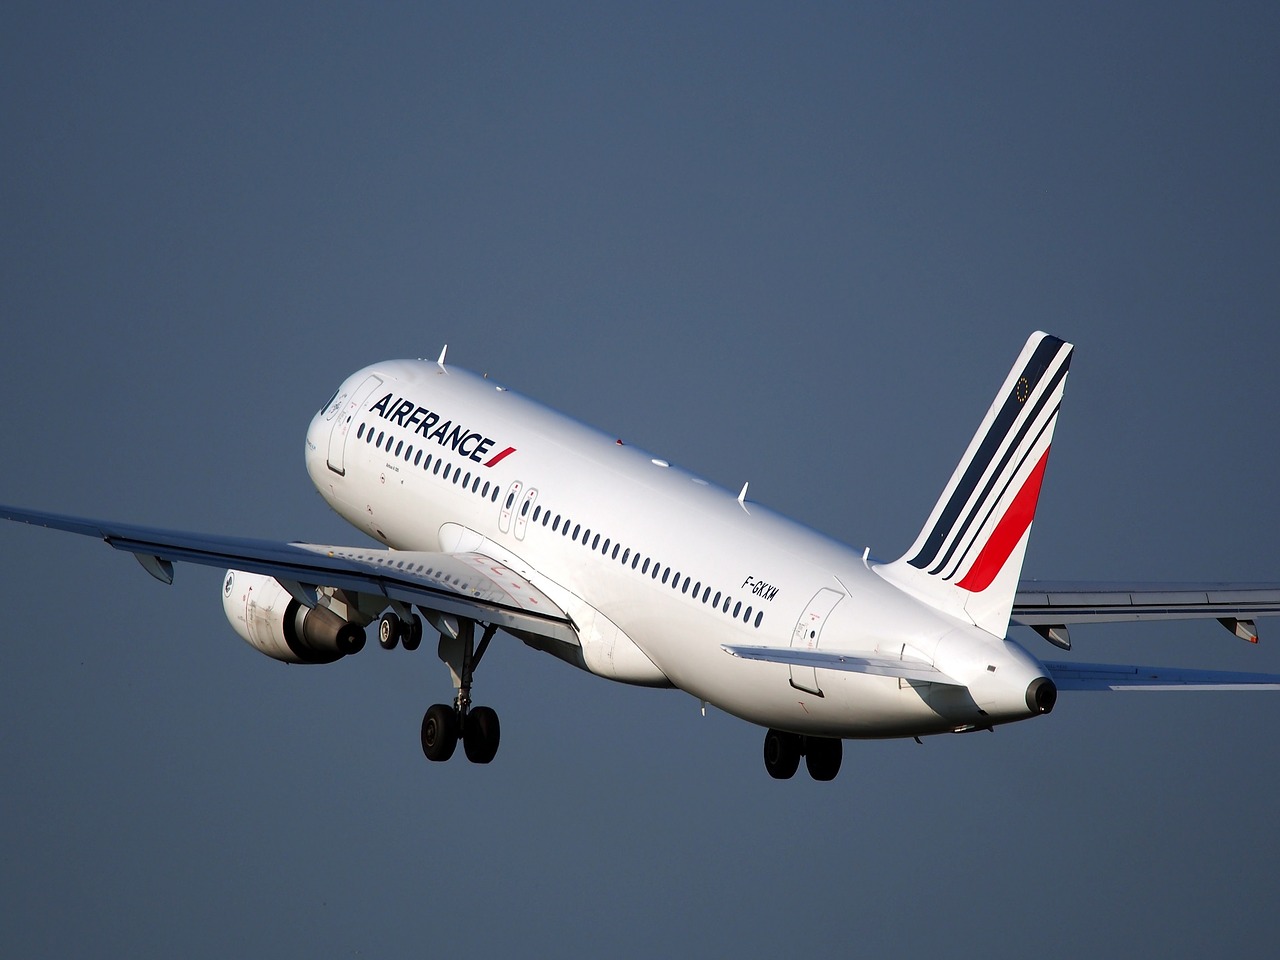 Air France: la direction propose une hausse des salaires de 4% sur 2018-2019